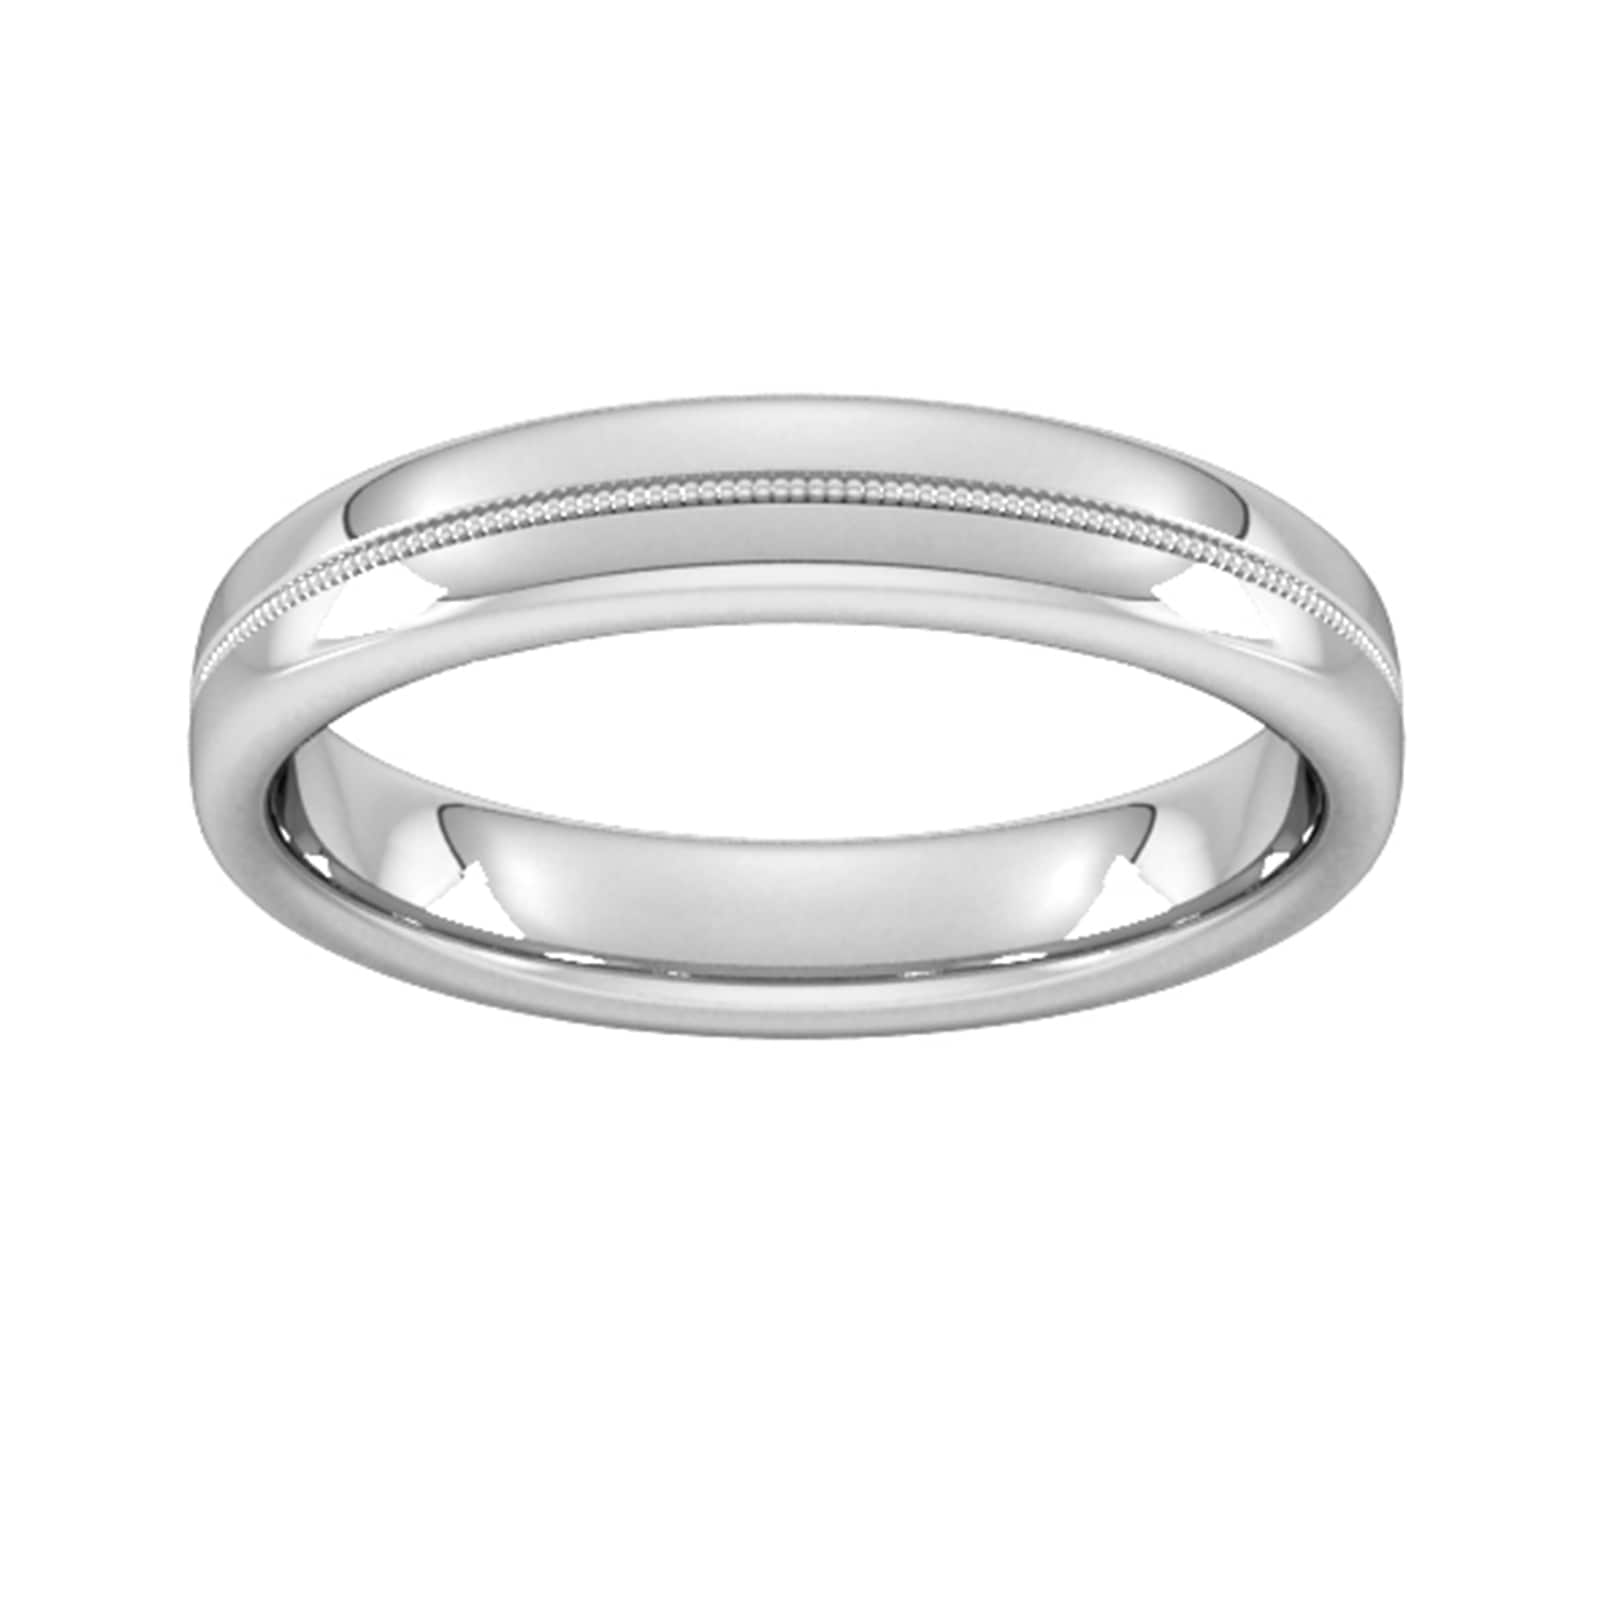 4mm Slight Court Heavy Milgrain Centre Wedding Ring In 9 Carat White Gold - Ring Size O